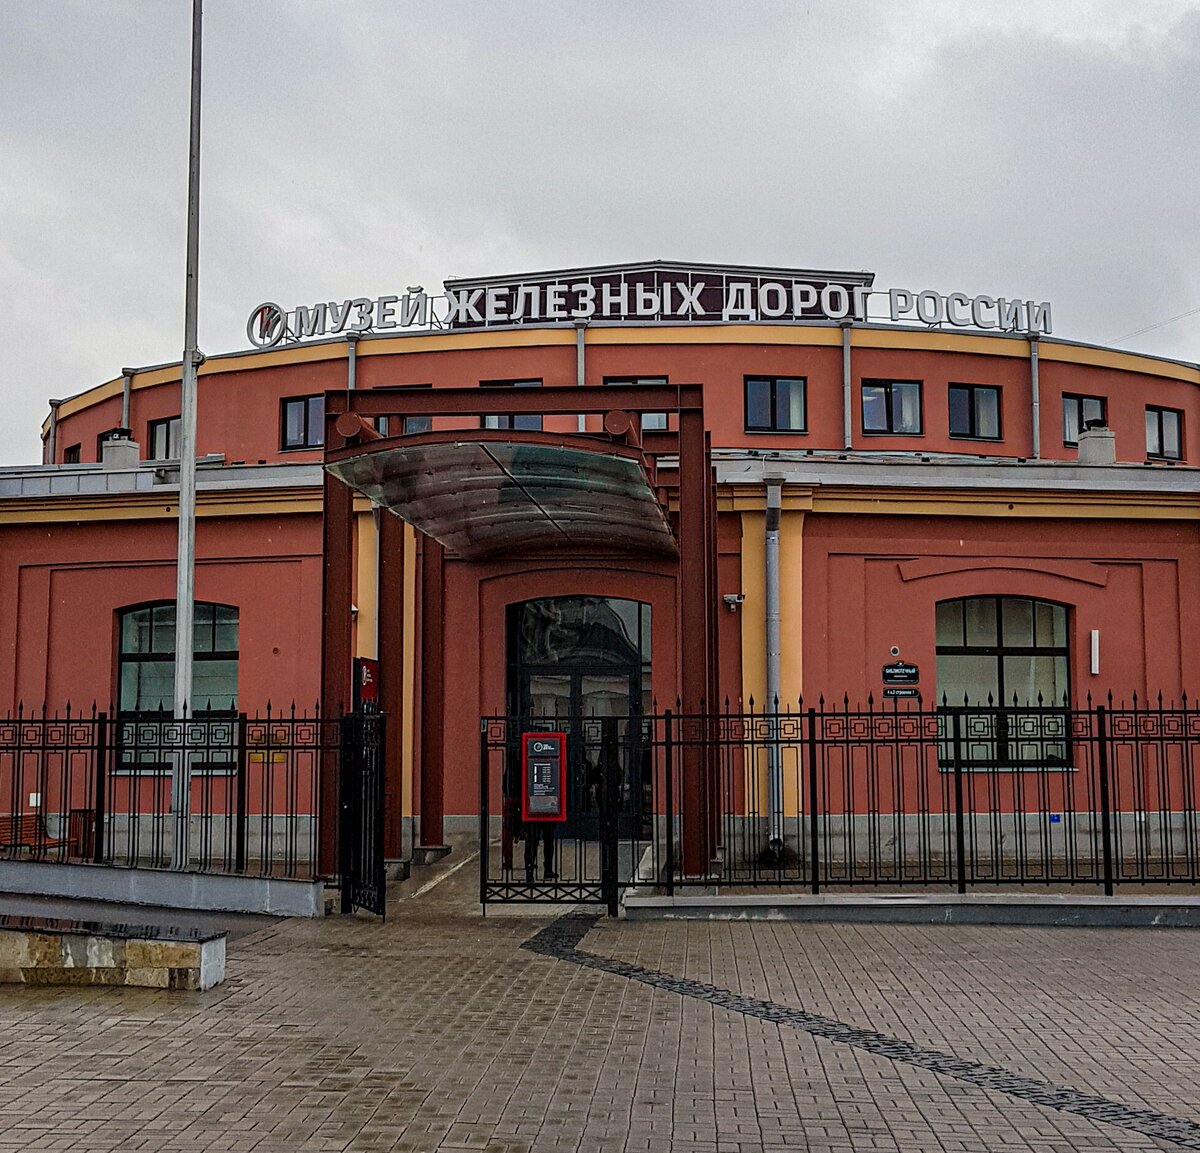 Библиотечный переулок 4 музей железных дорог России